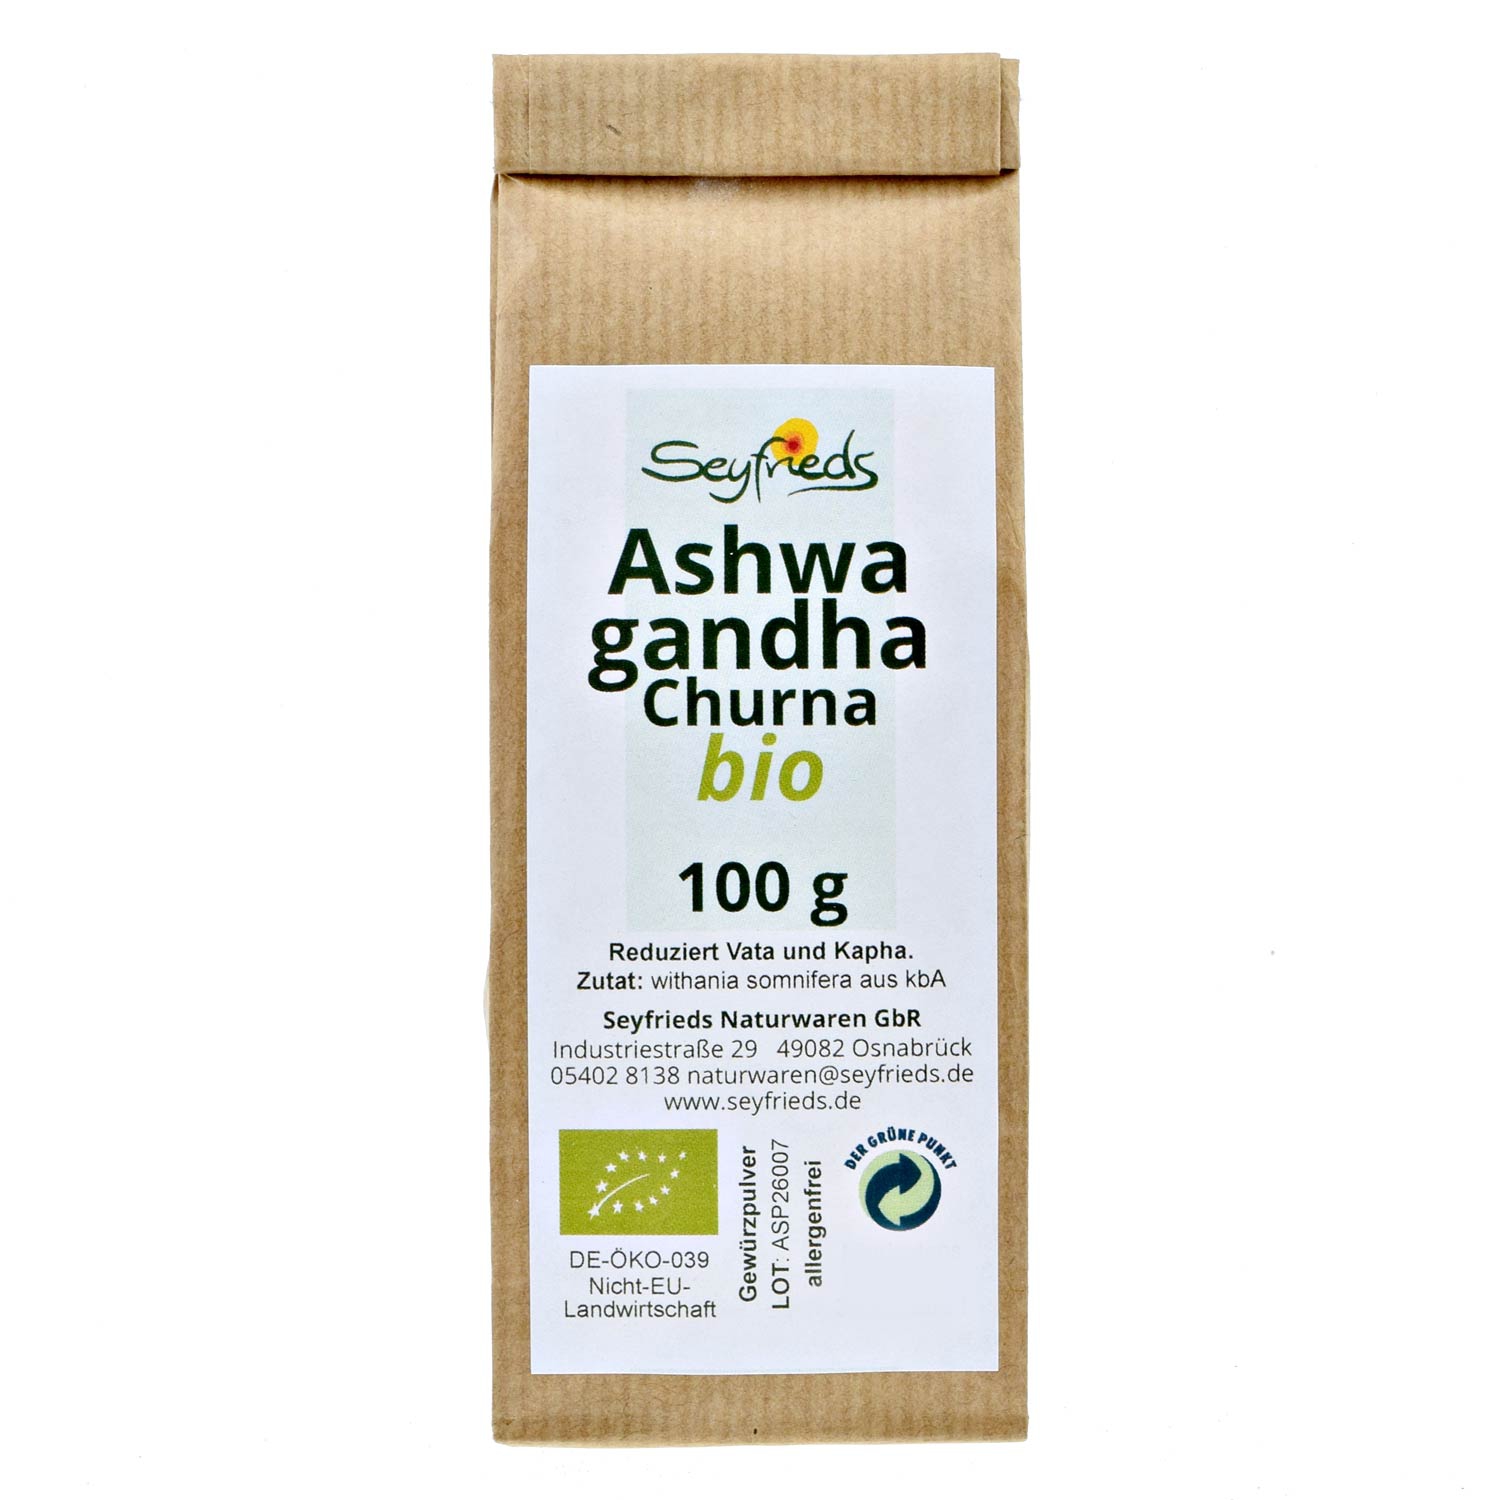 Ashwagandha Churna bio 100 g Seyfrieds